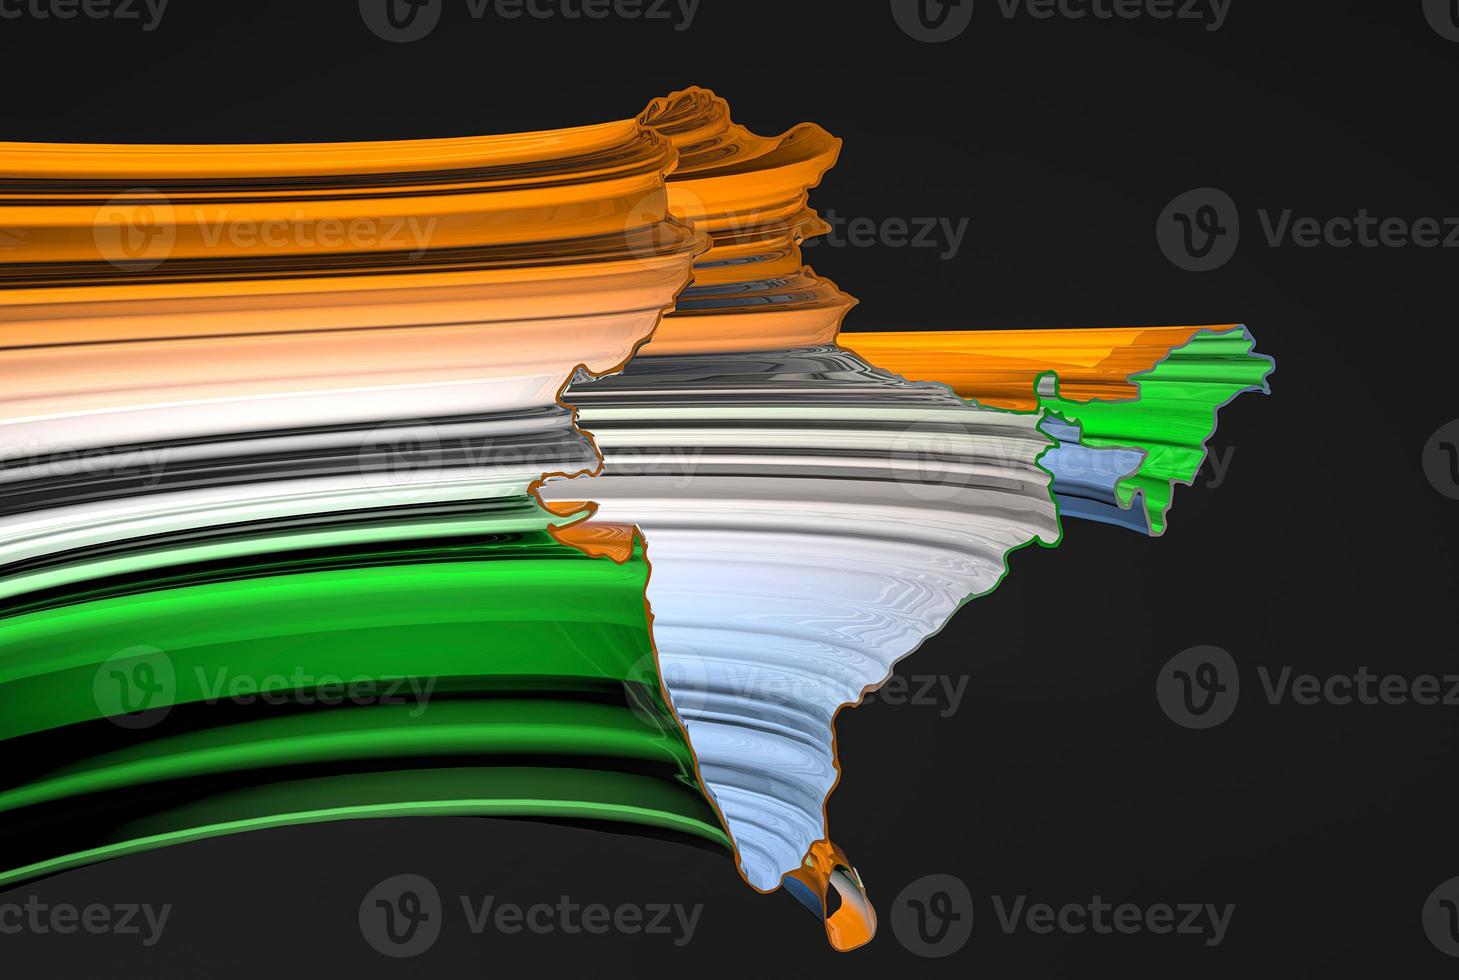 incroyable carte indienne de l'inde avec rendu 3d tricolore images de rendu 3d photo